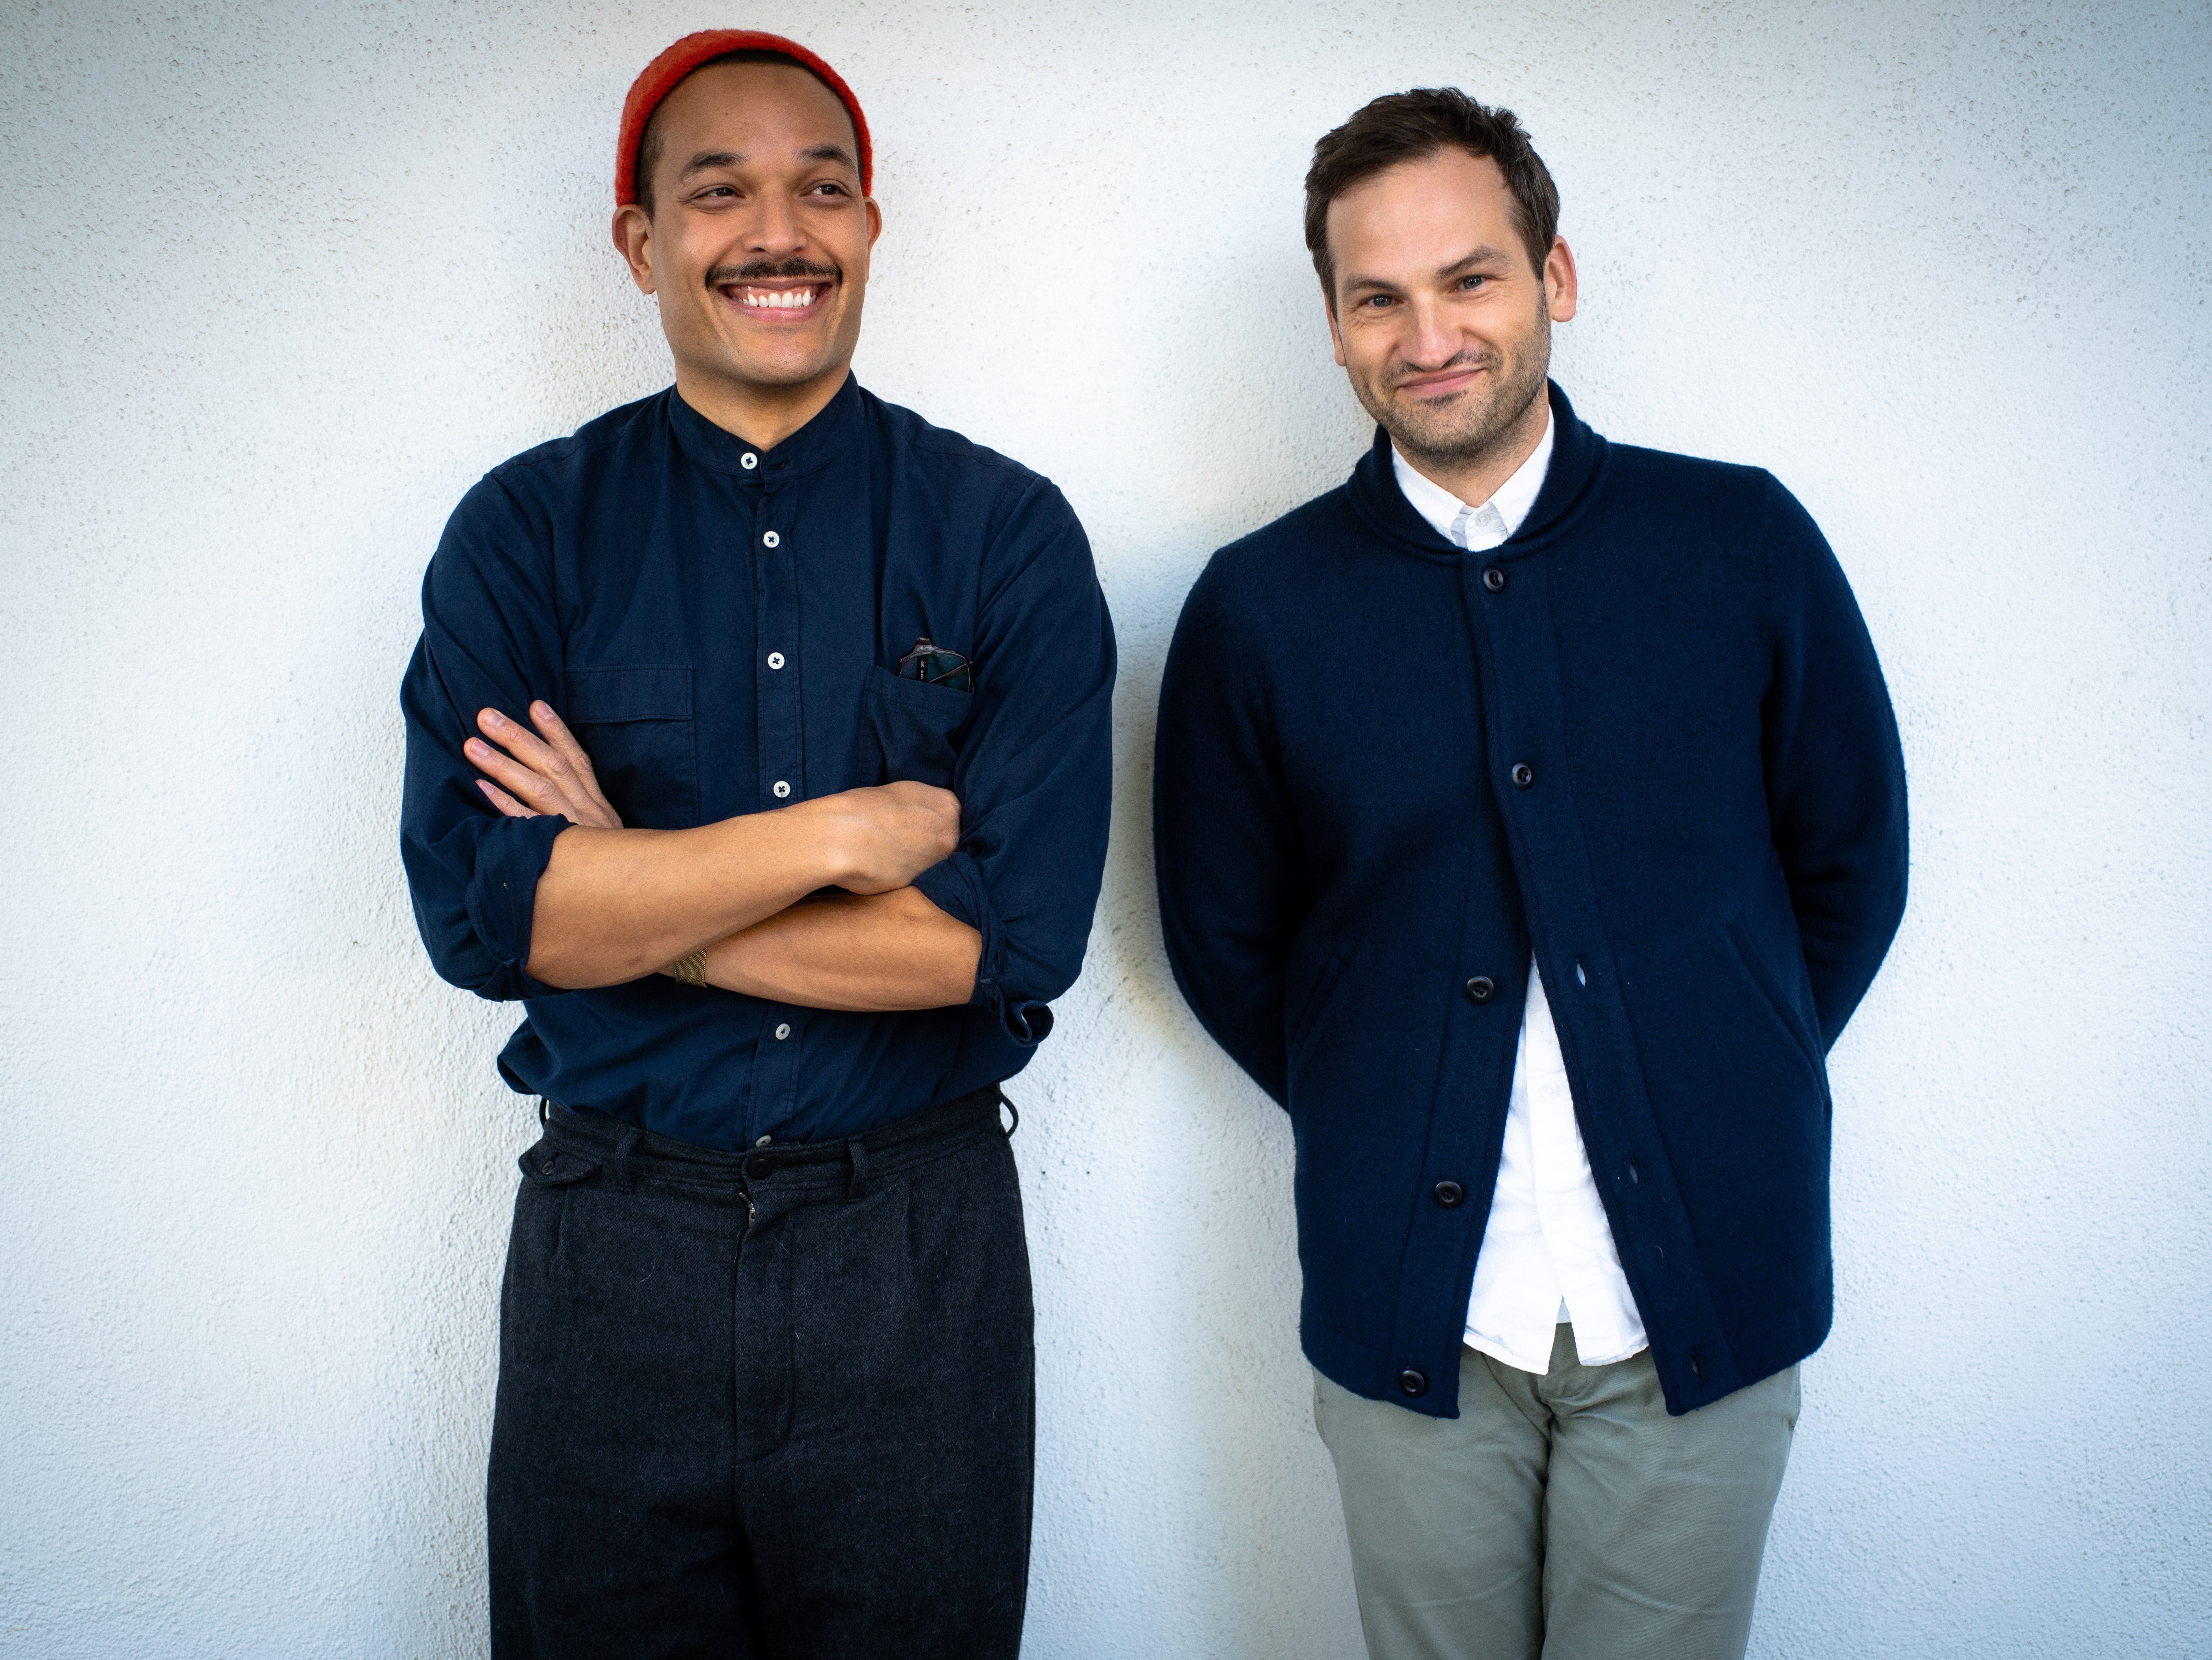 ‘TINA’ directors TJ Martin (left) and Dan Lindsay